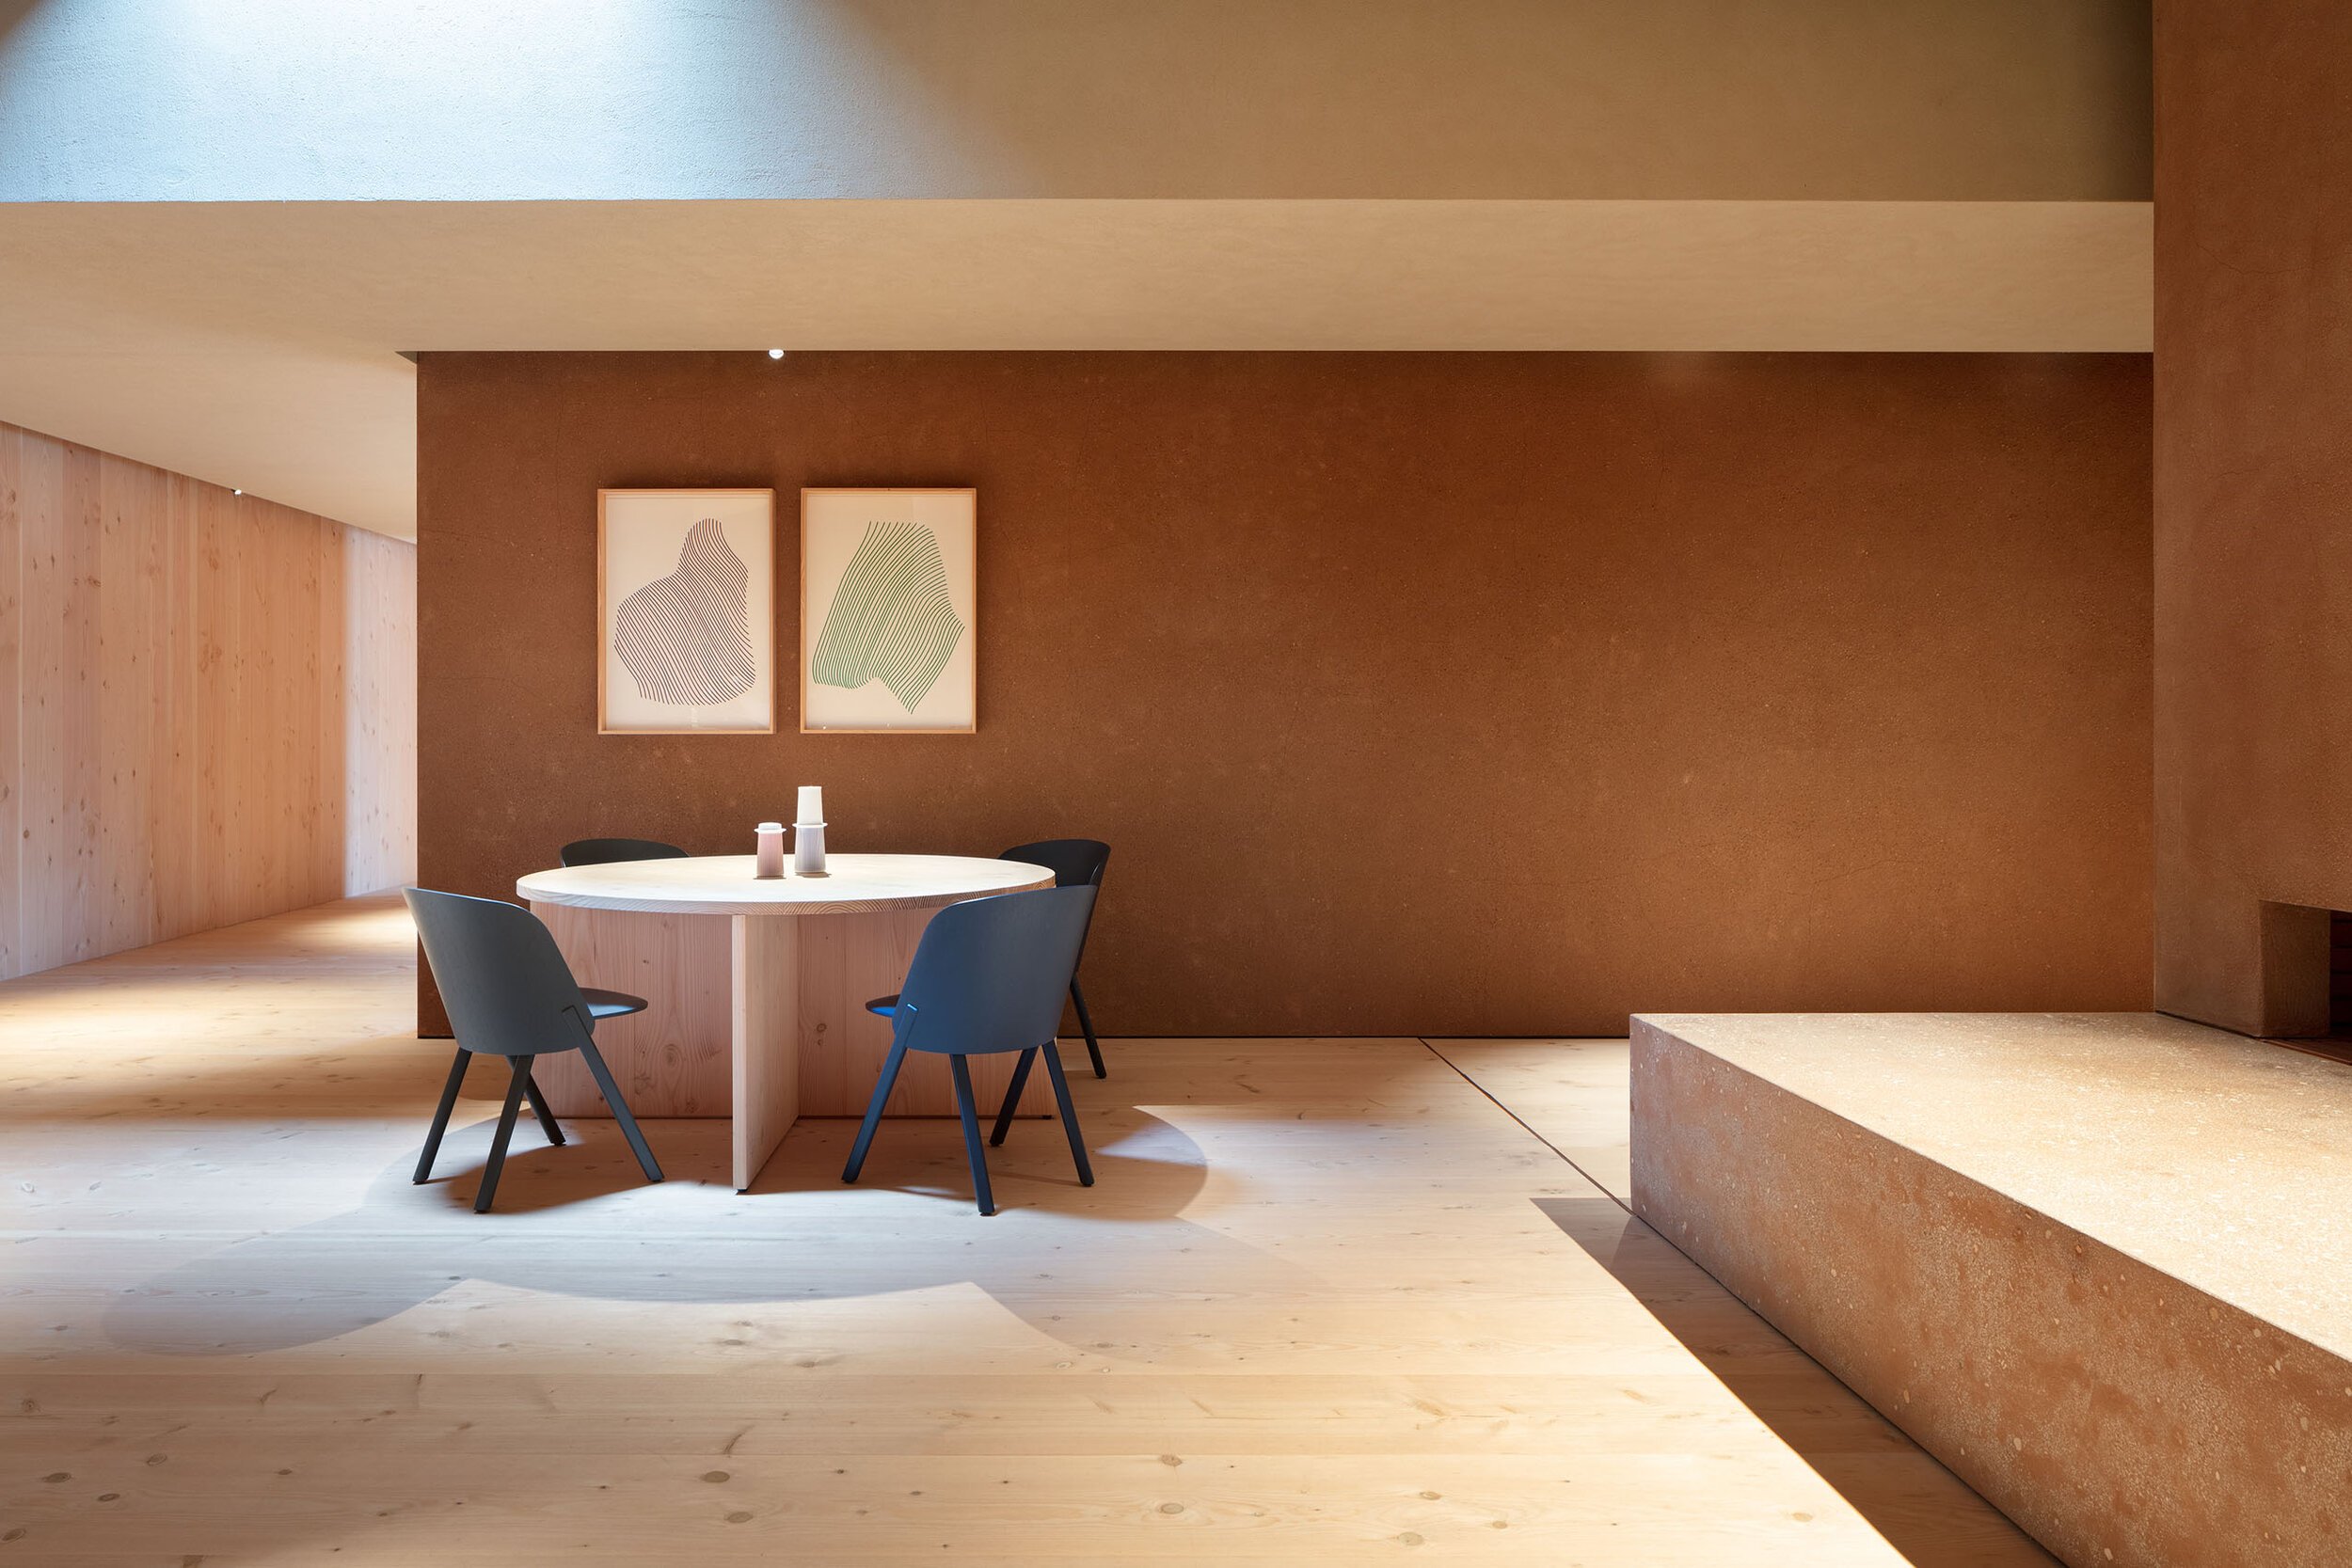  TERUHIRO YANAGIHARA STUDIOの柳原照弘がデザインした1616/arita japan 有田ショールーム。壁はオリジナルの土壁 